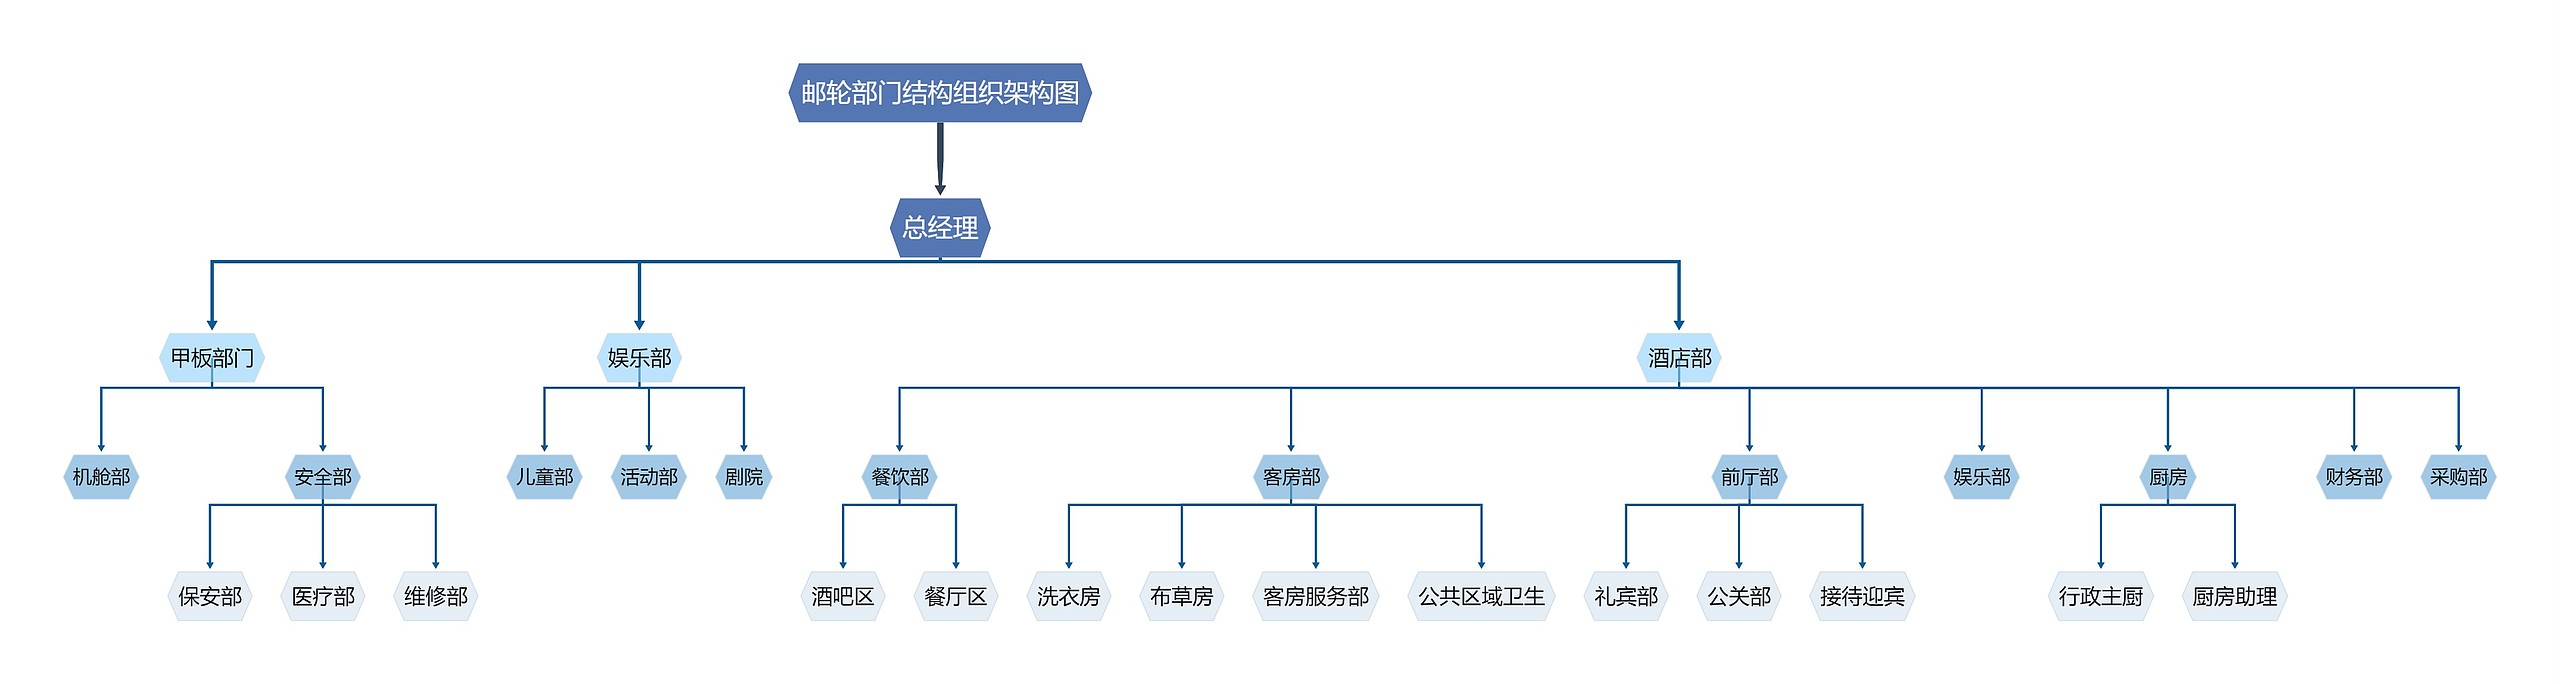 邮轮部门结构组织架构图